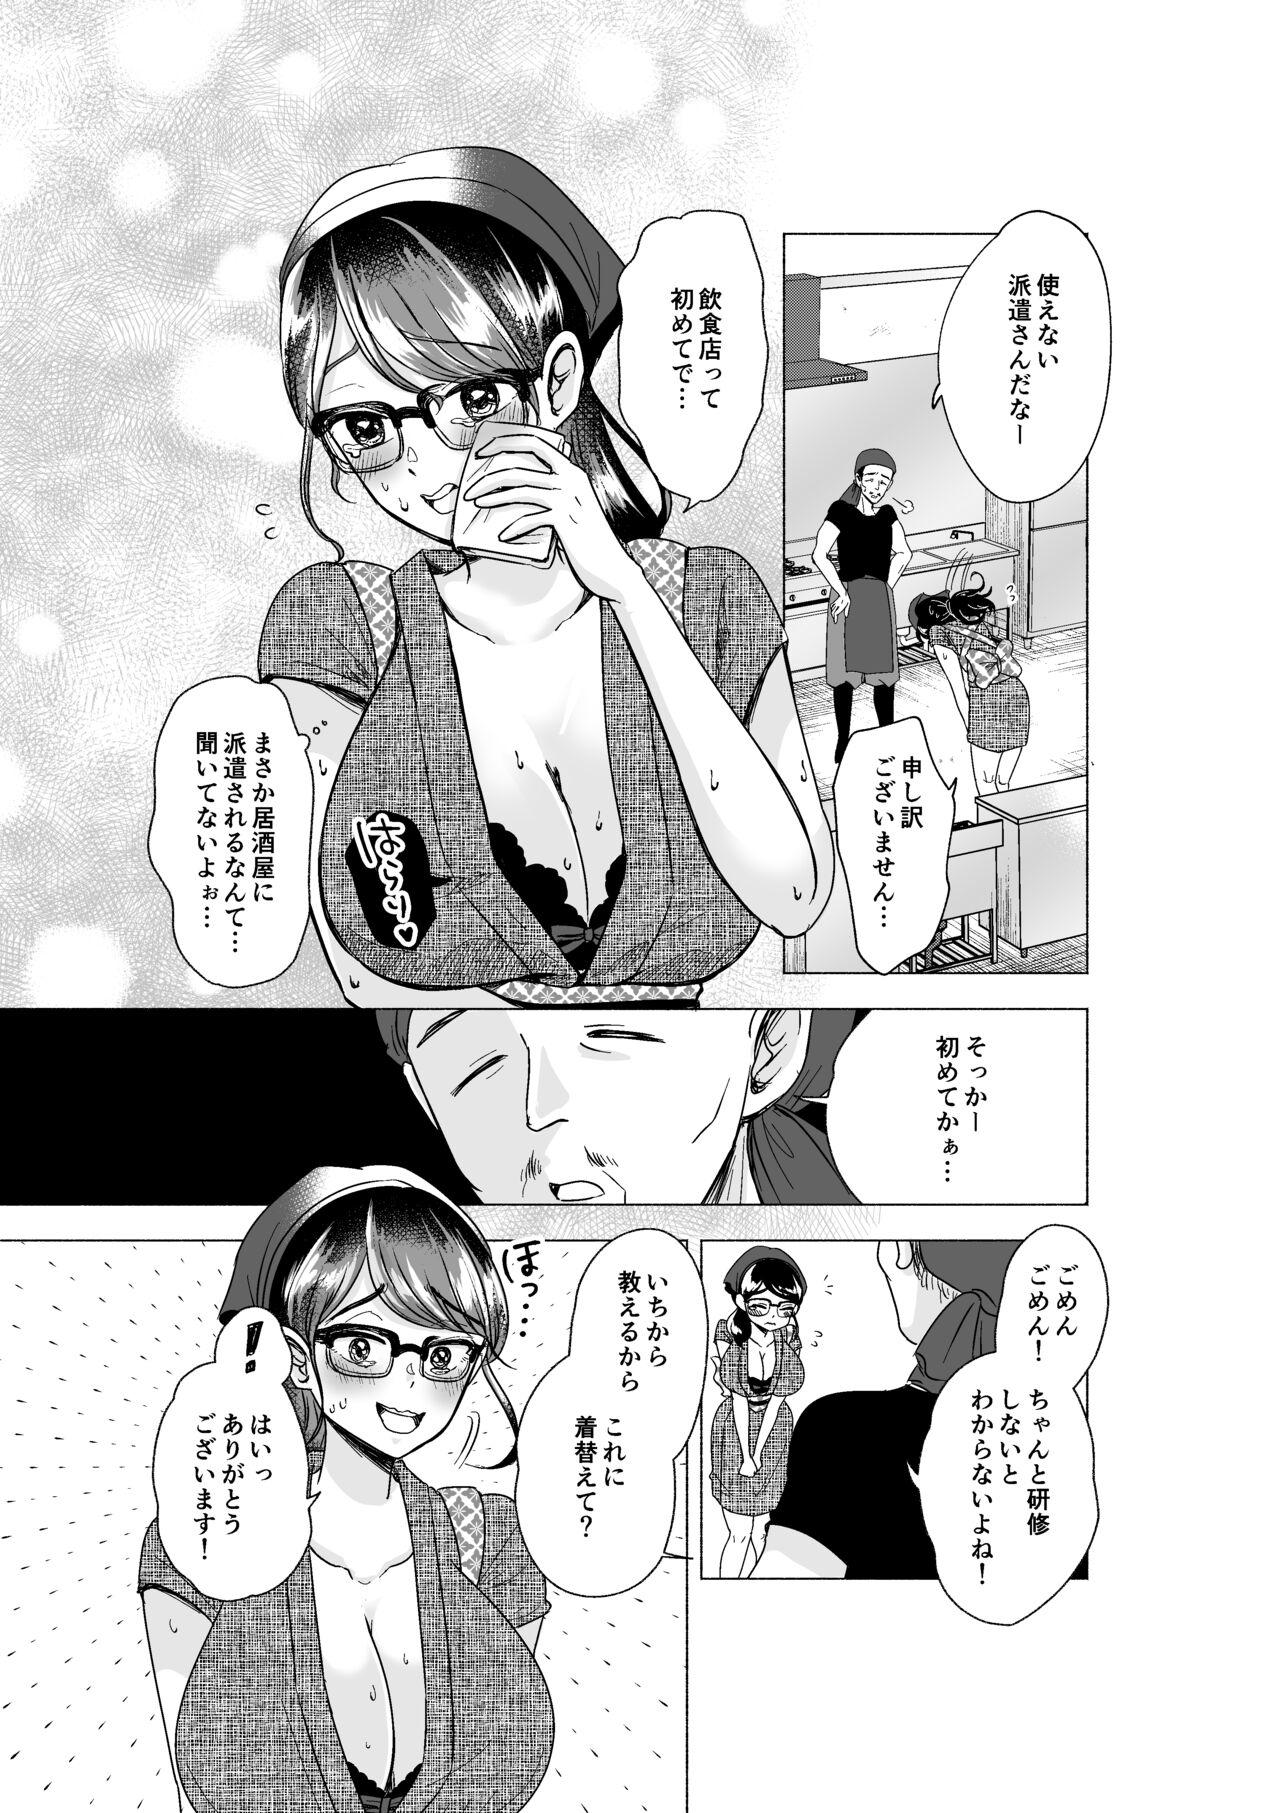 Pick Up Omataseshimashita, oppaidesu! - Original Morrita - Page 7